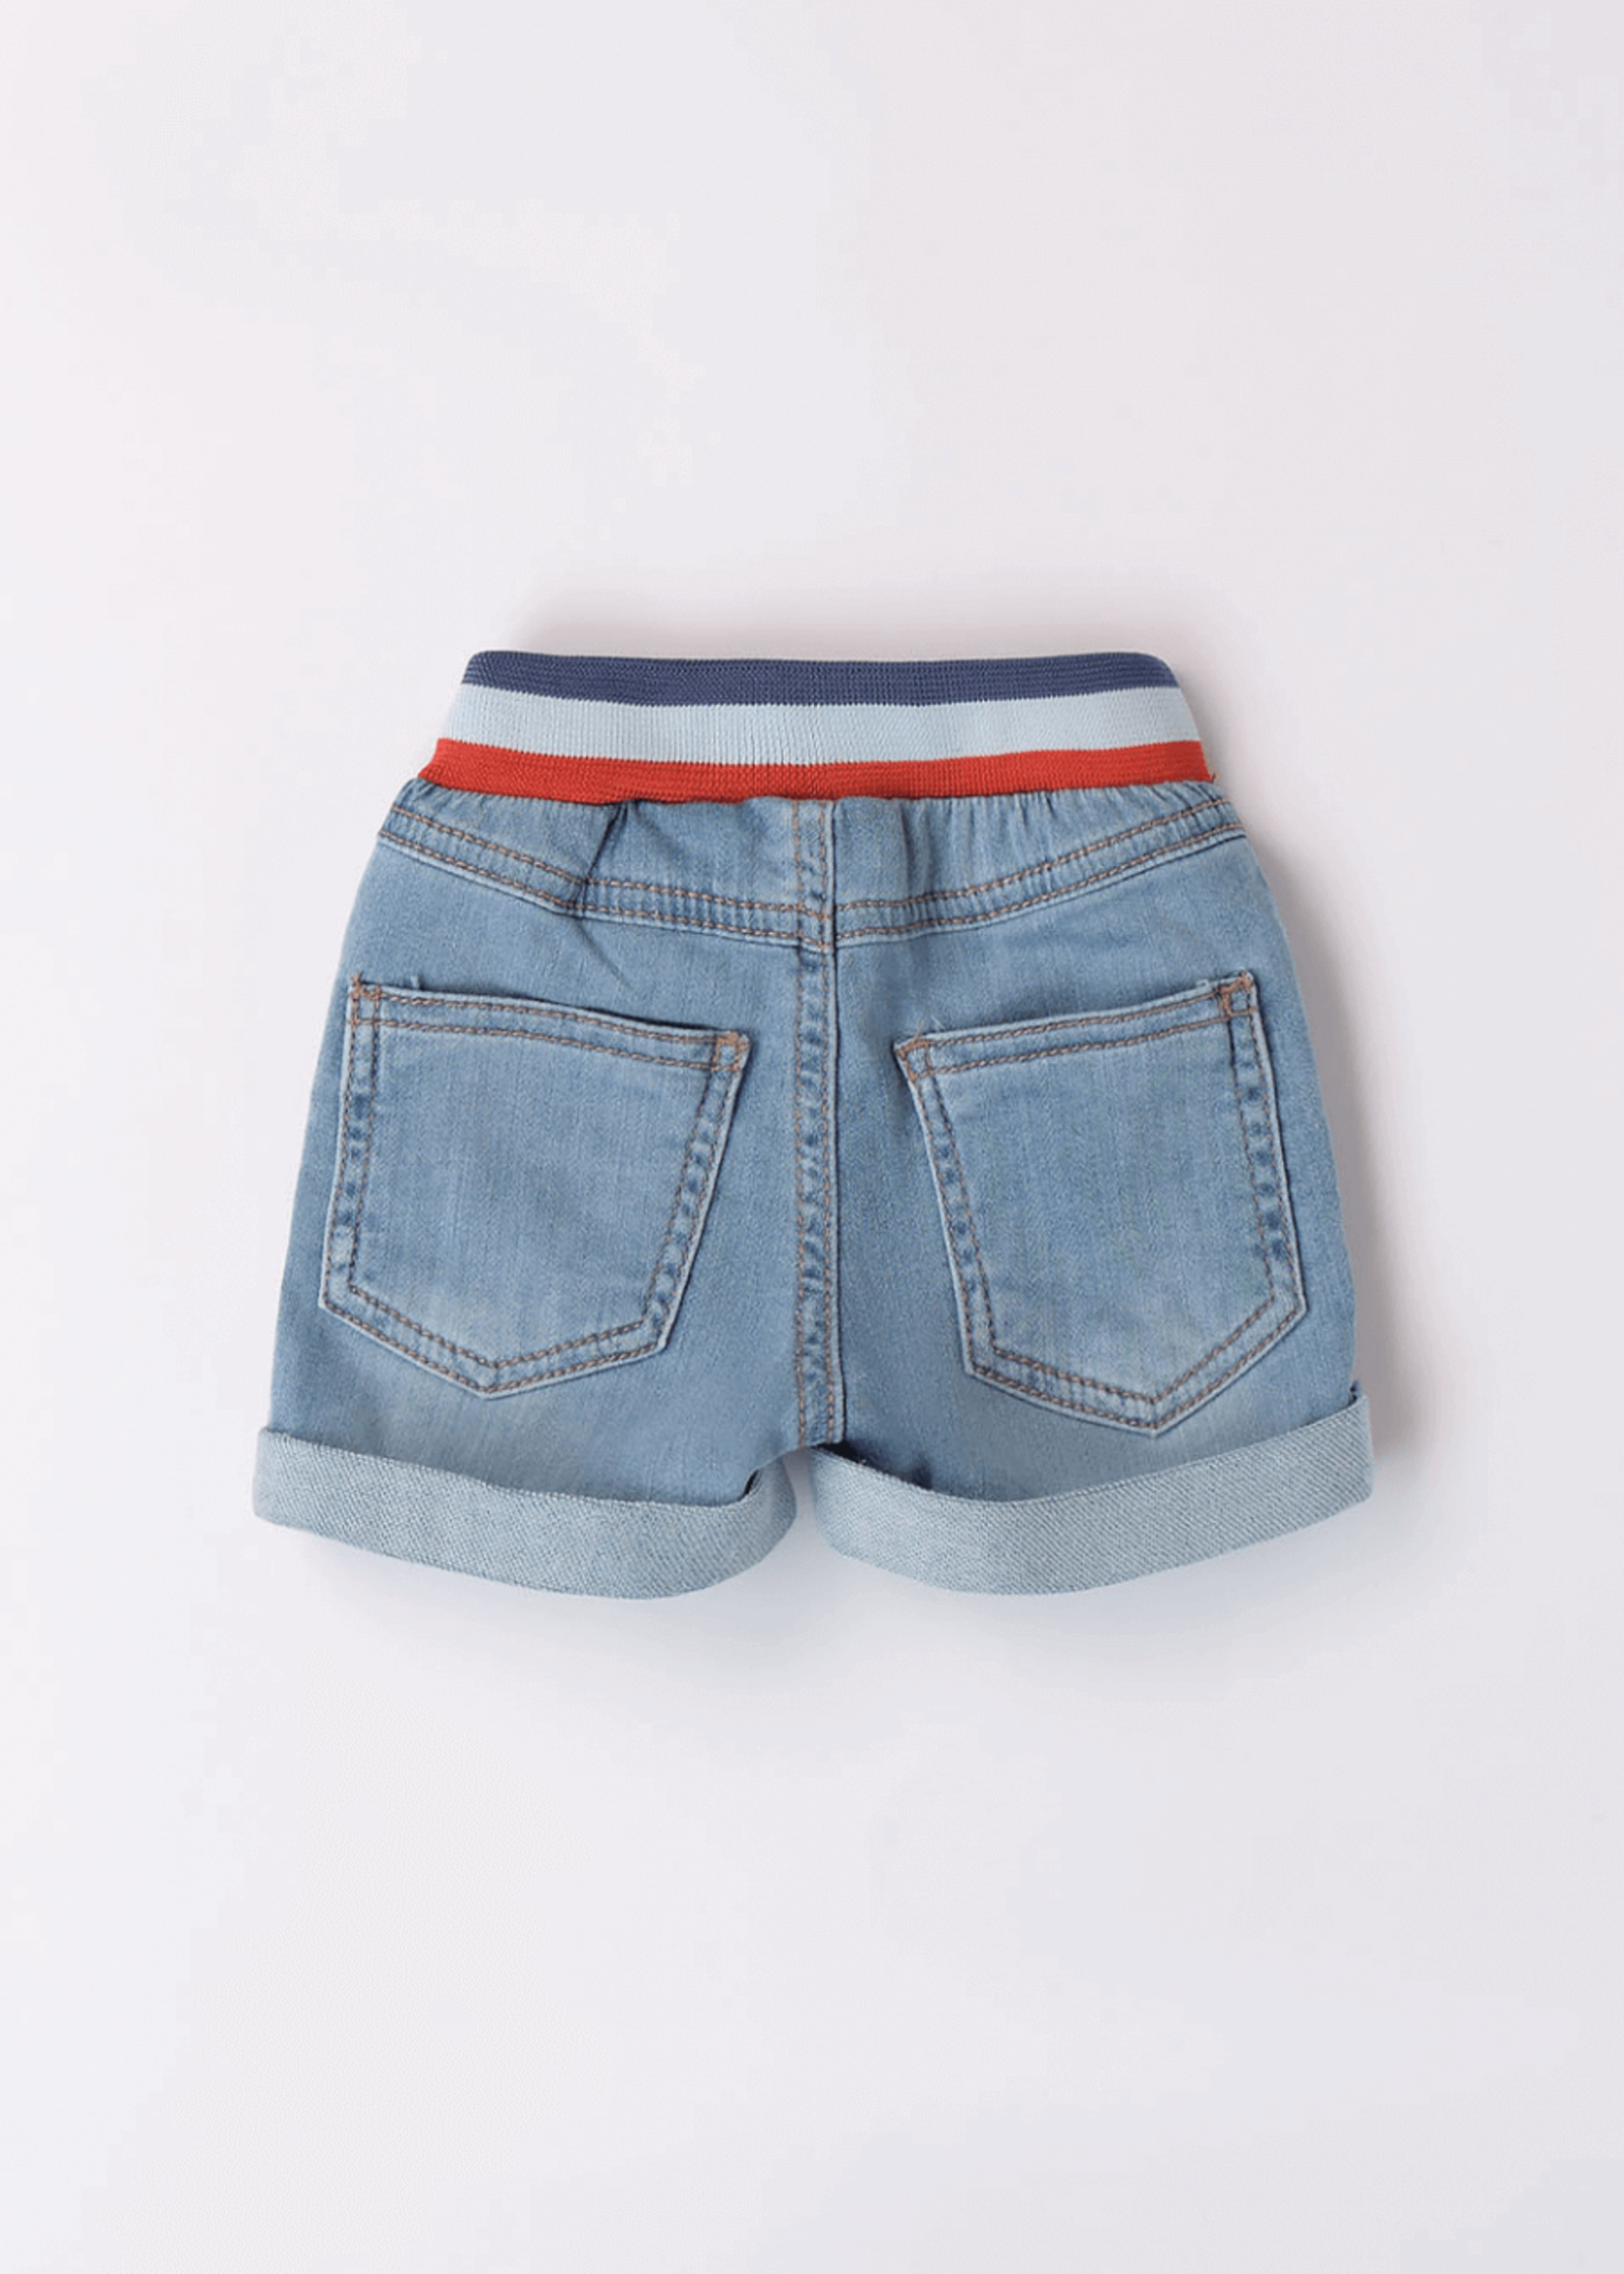 Minibanda Baby Denim Shorts